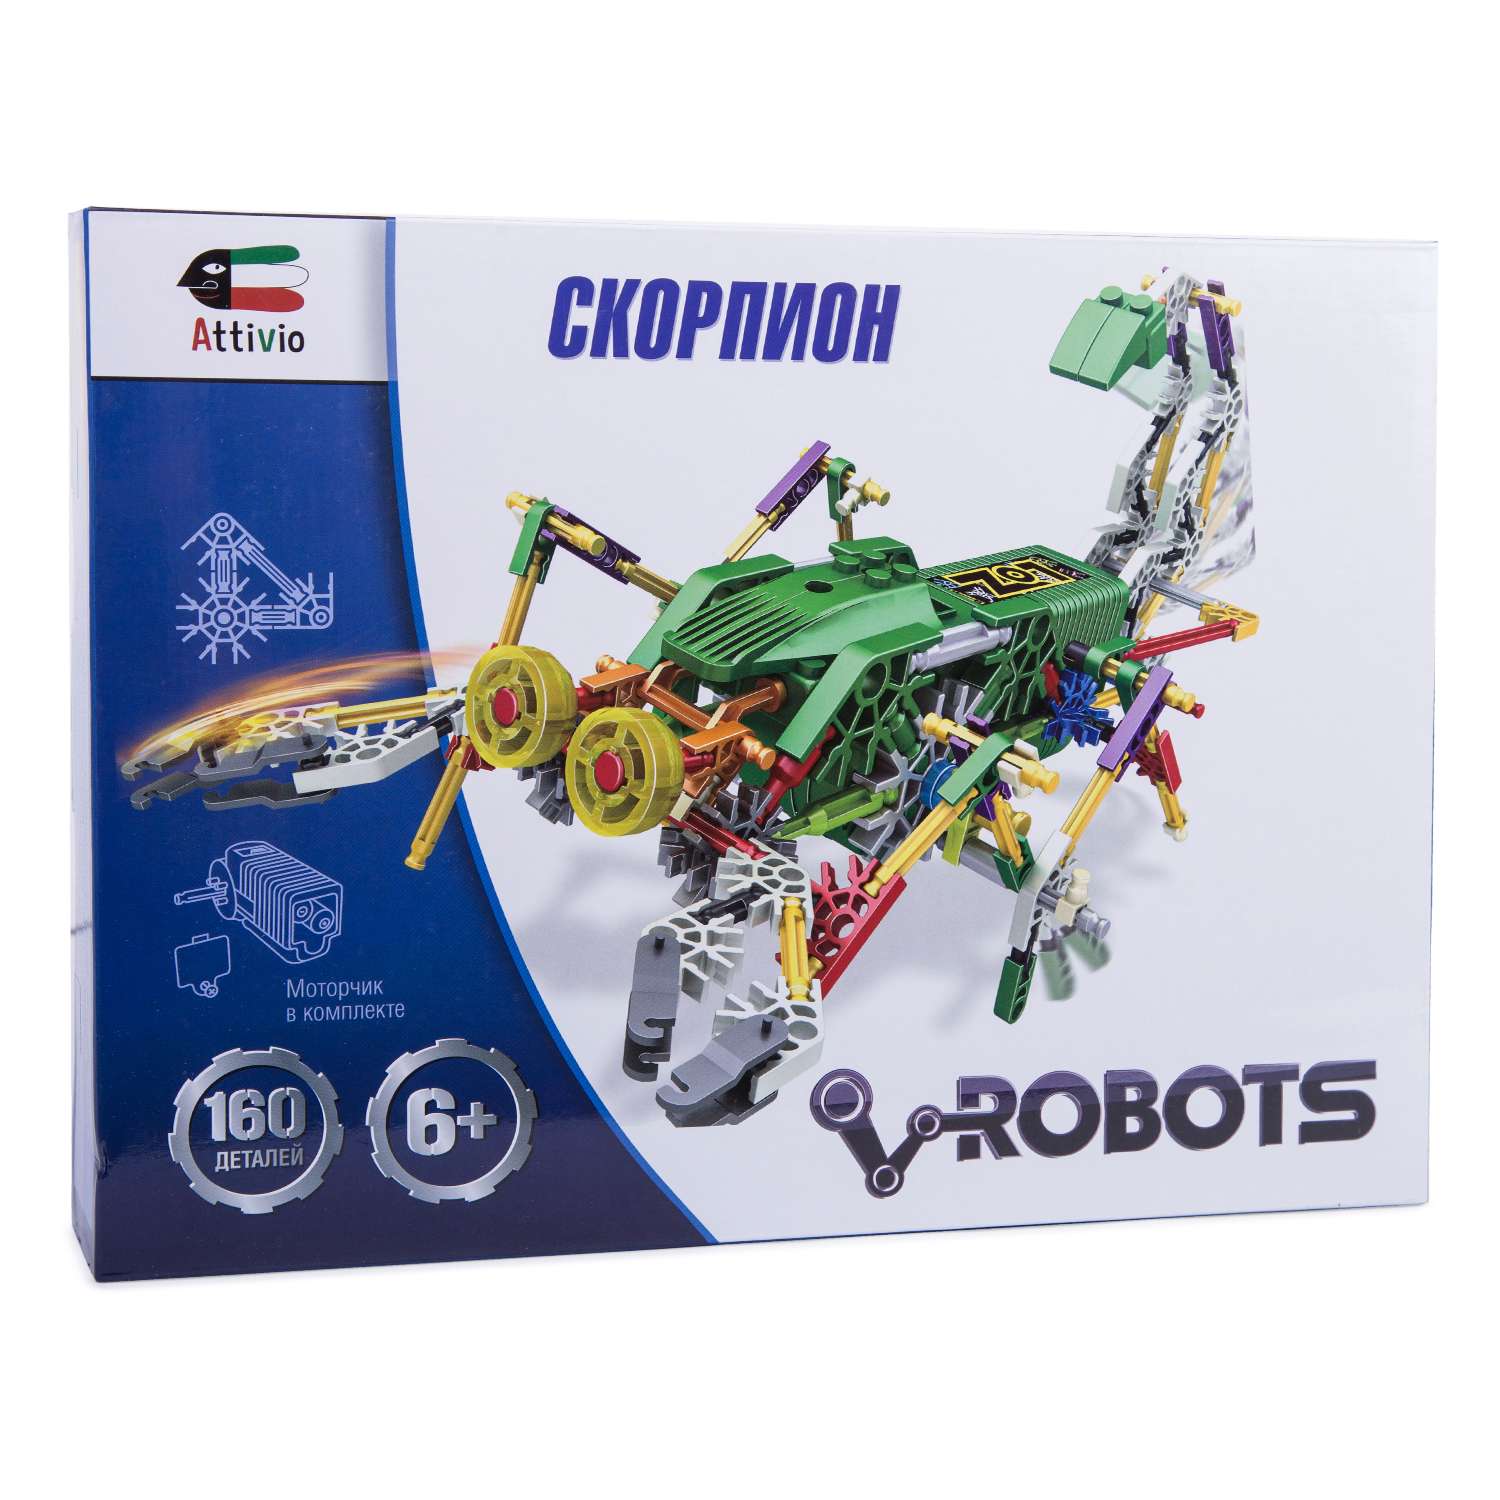 Конструктор Attivio Скорпион-робот - фото 1